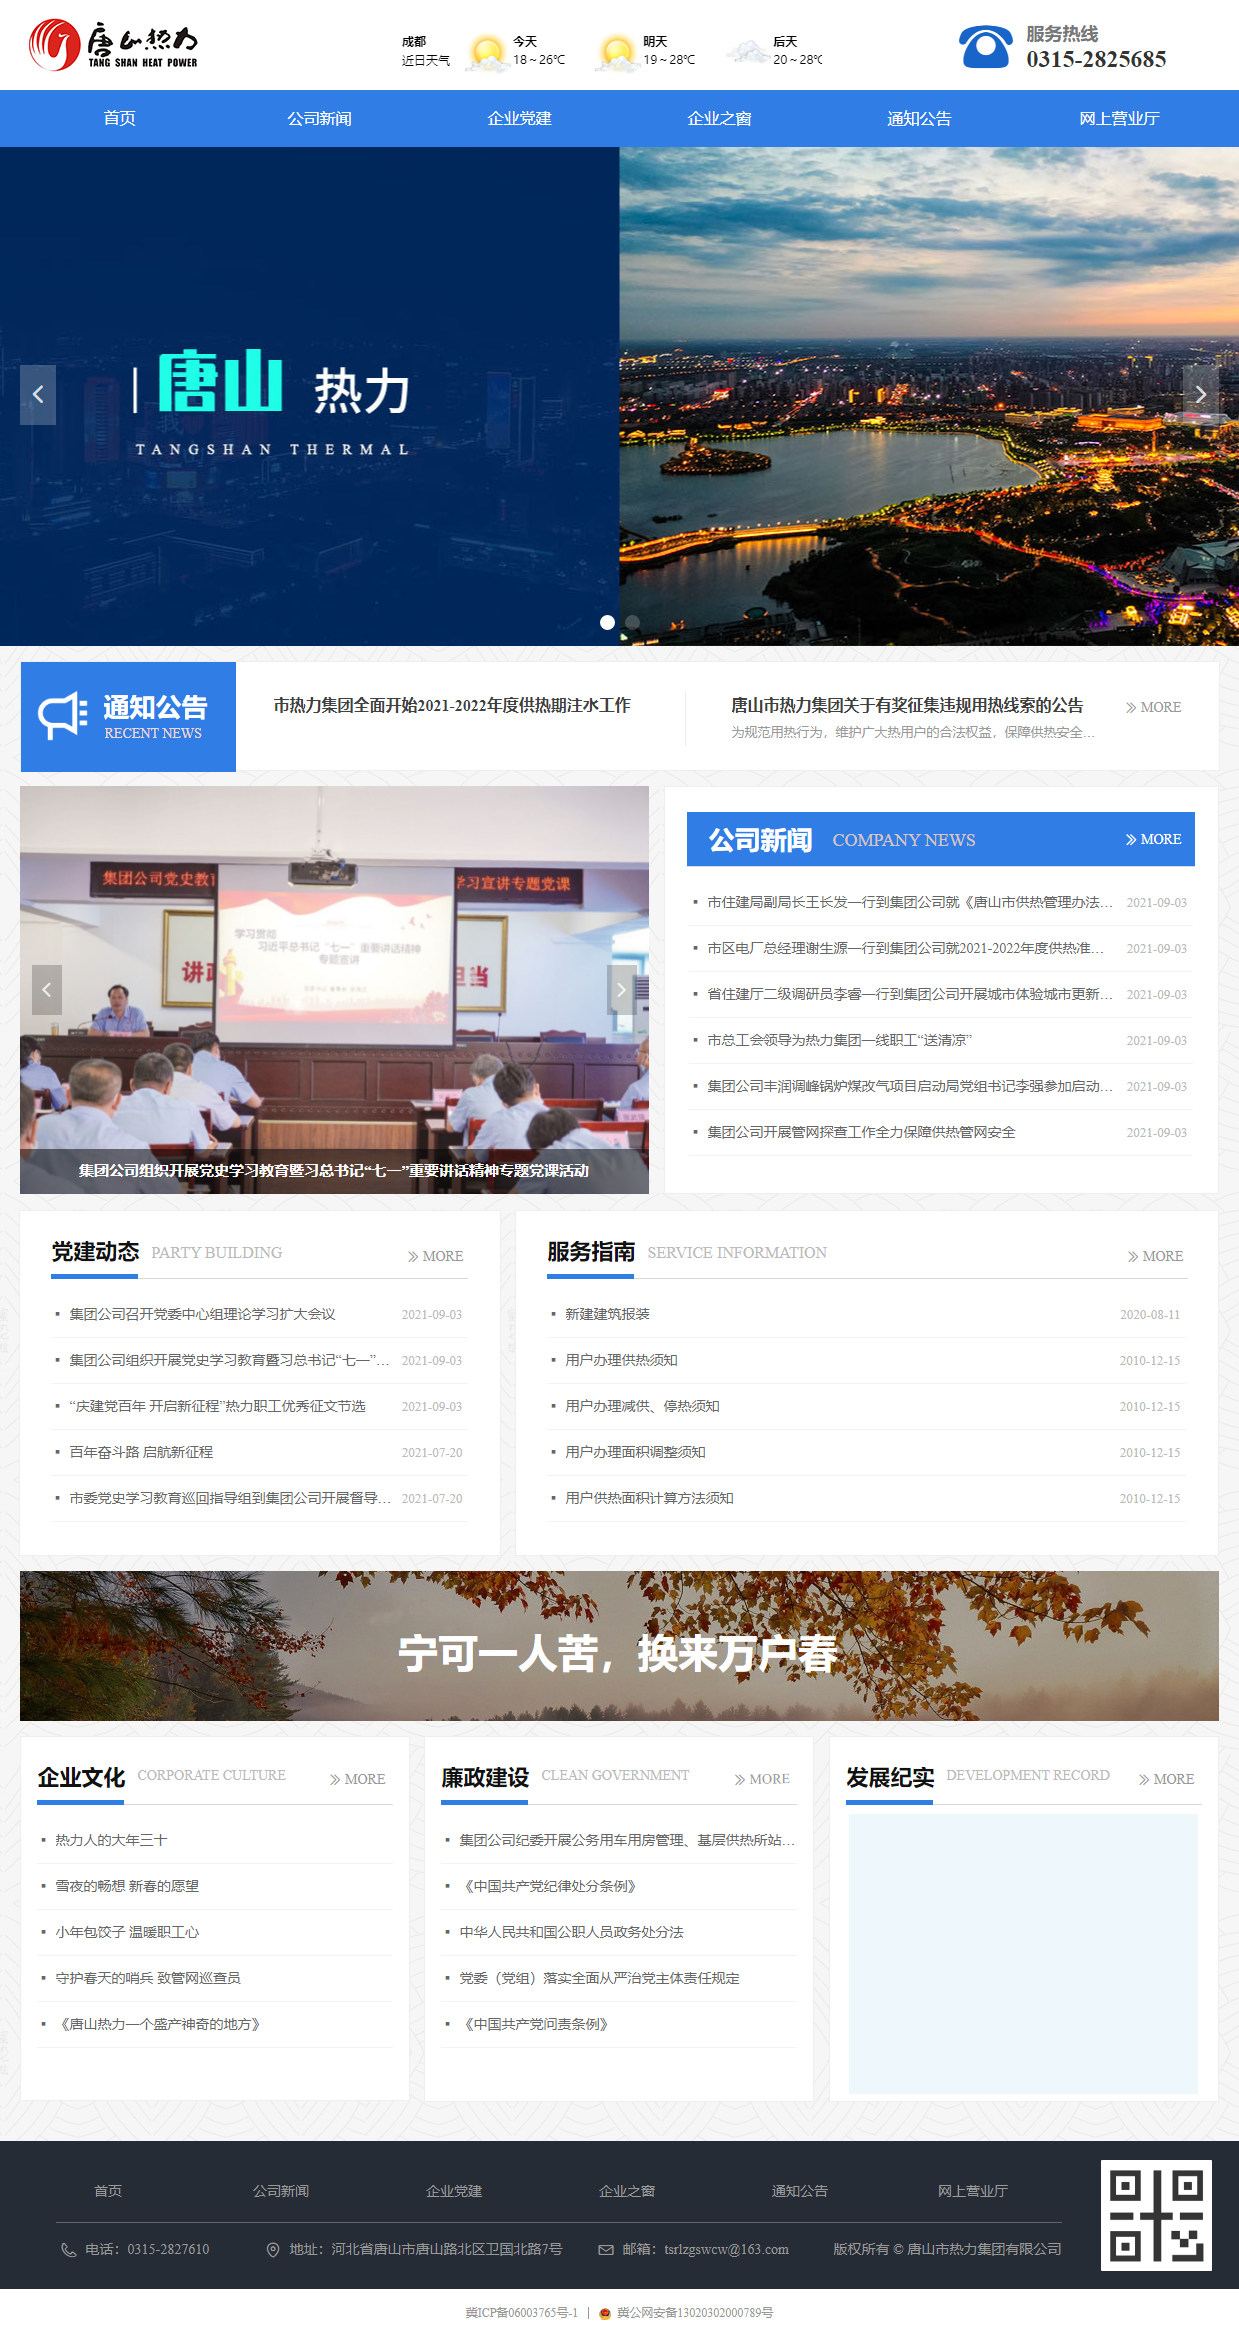 唐山市热力集团有限公司网站案例